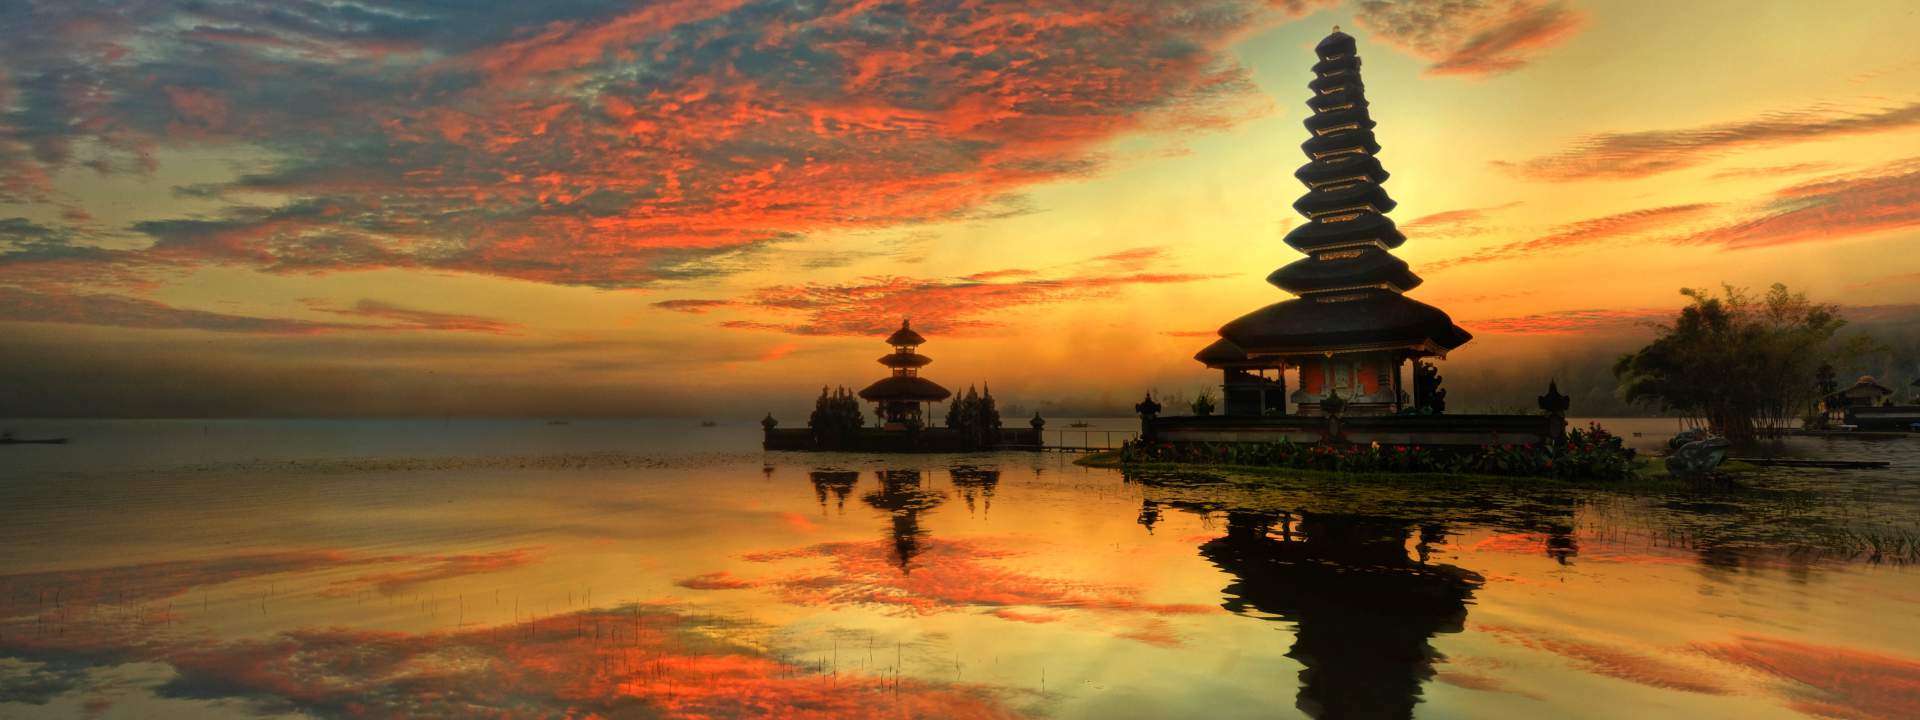 Bali erleben mit einer privaten Kabine auf dem Katamaran